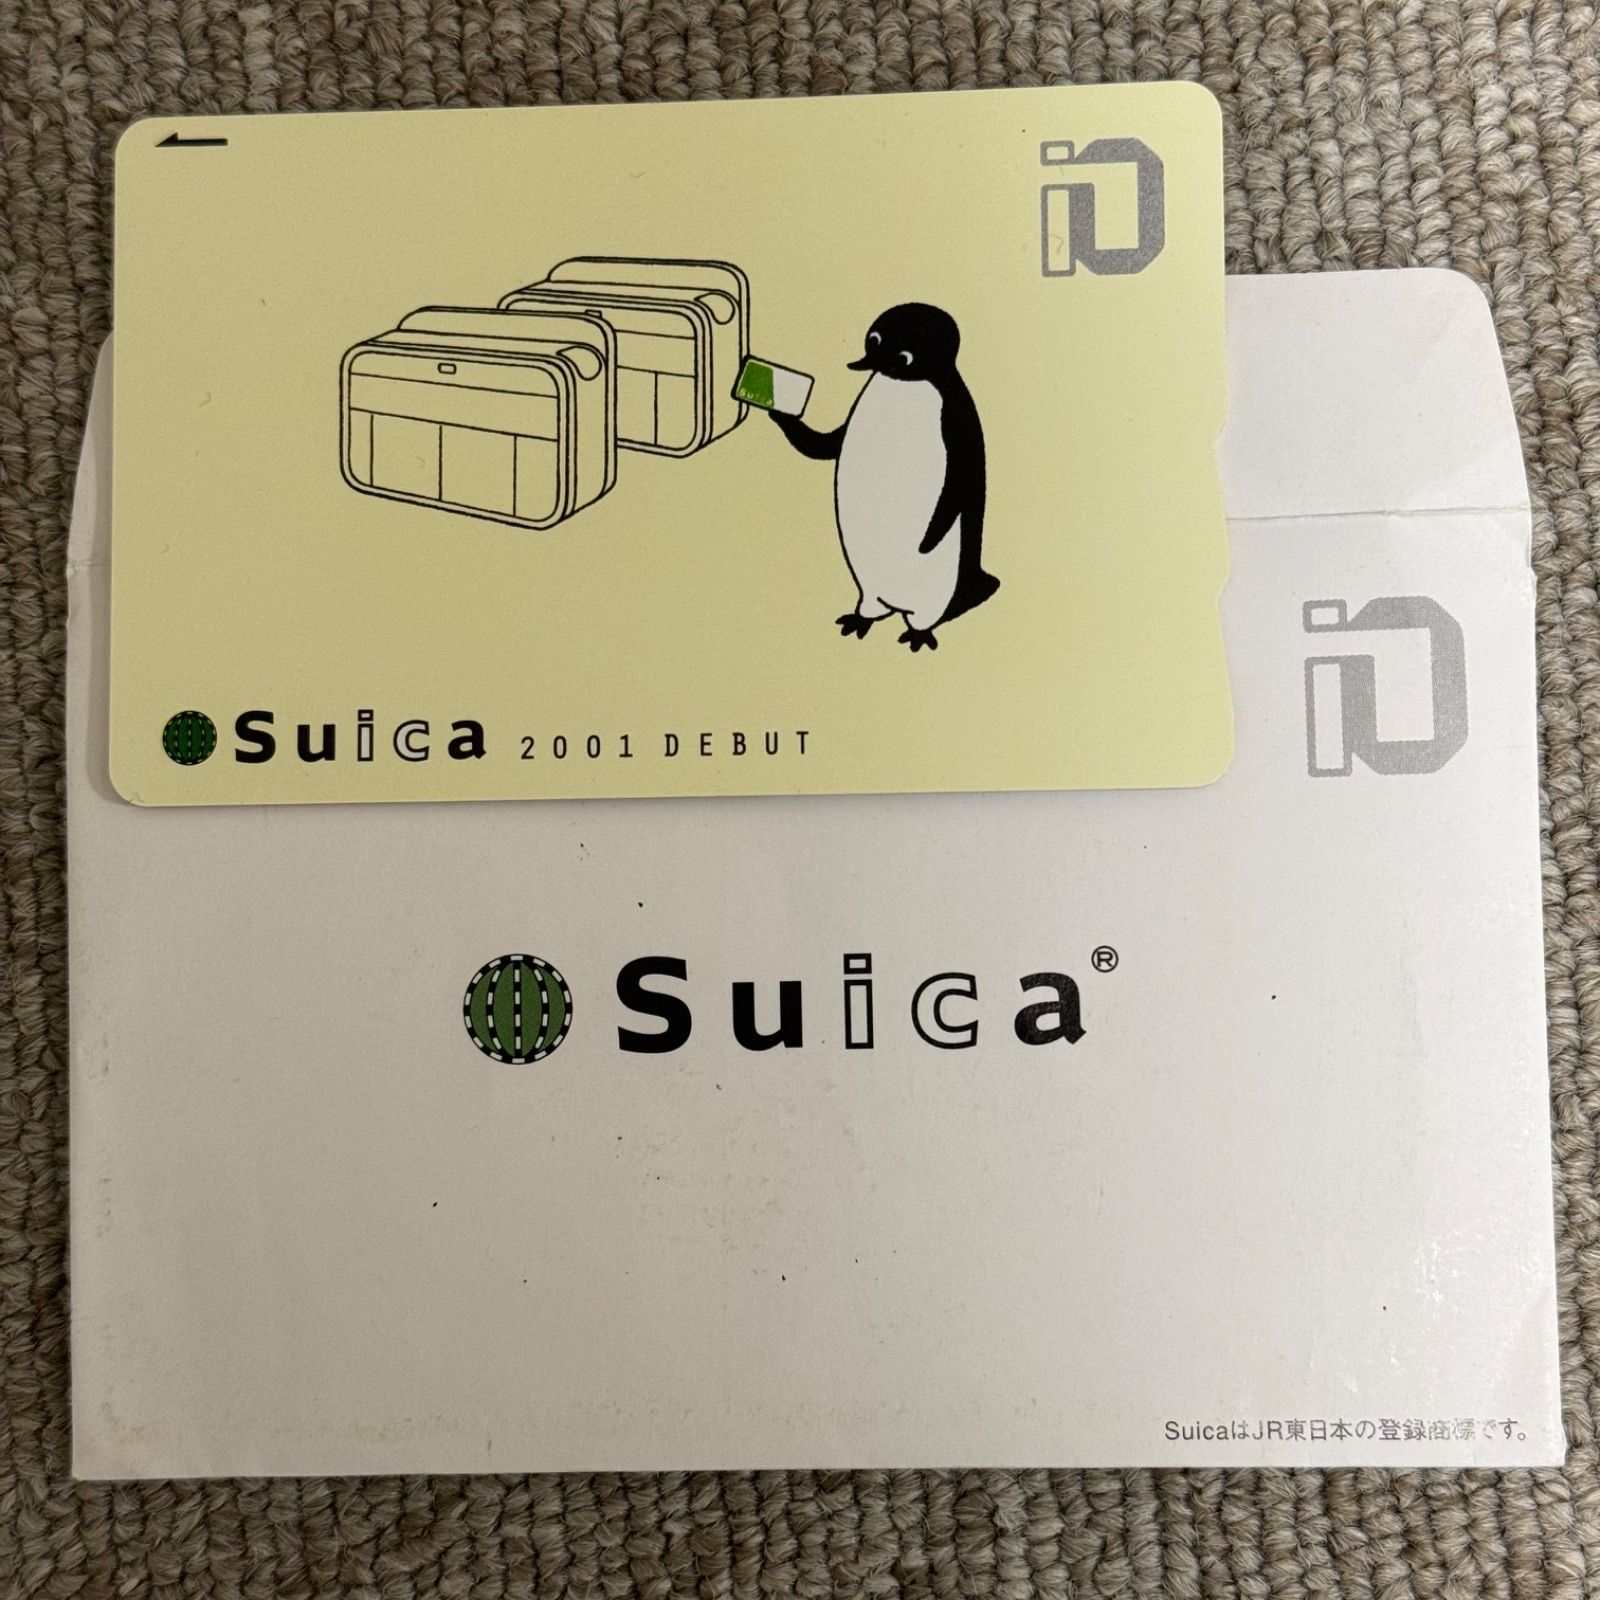 Suica 2001 DEBUT デビュー記念 Suicaイオカード - メルカリ